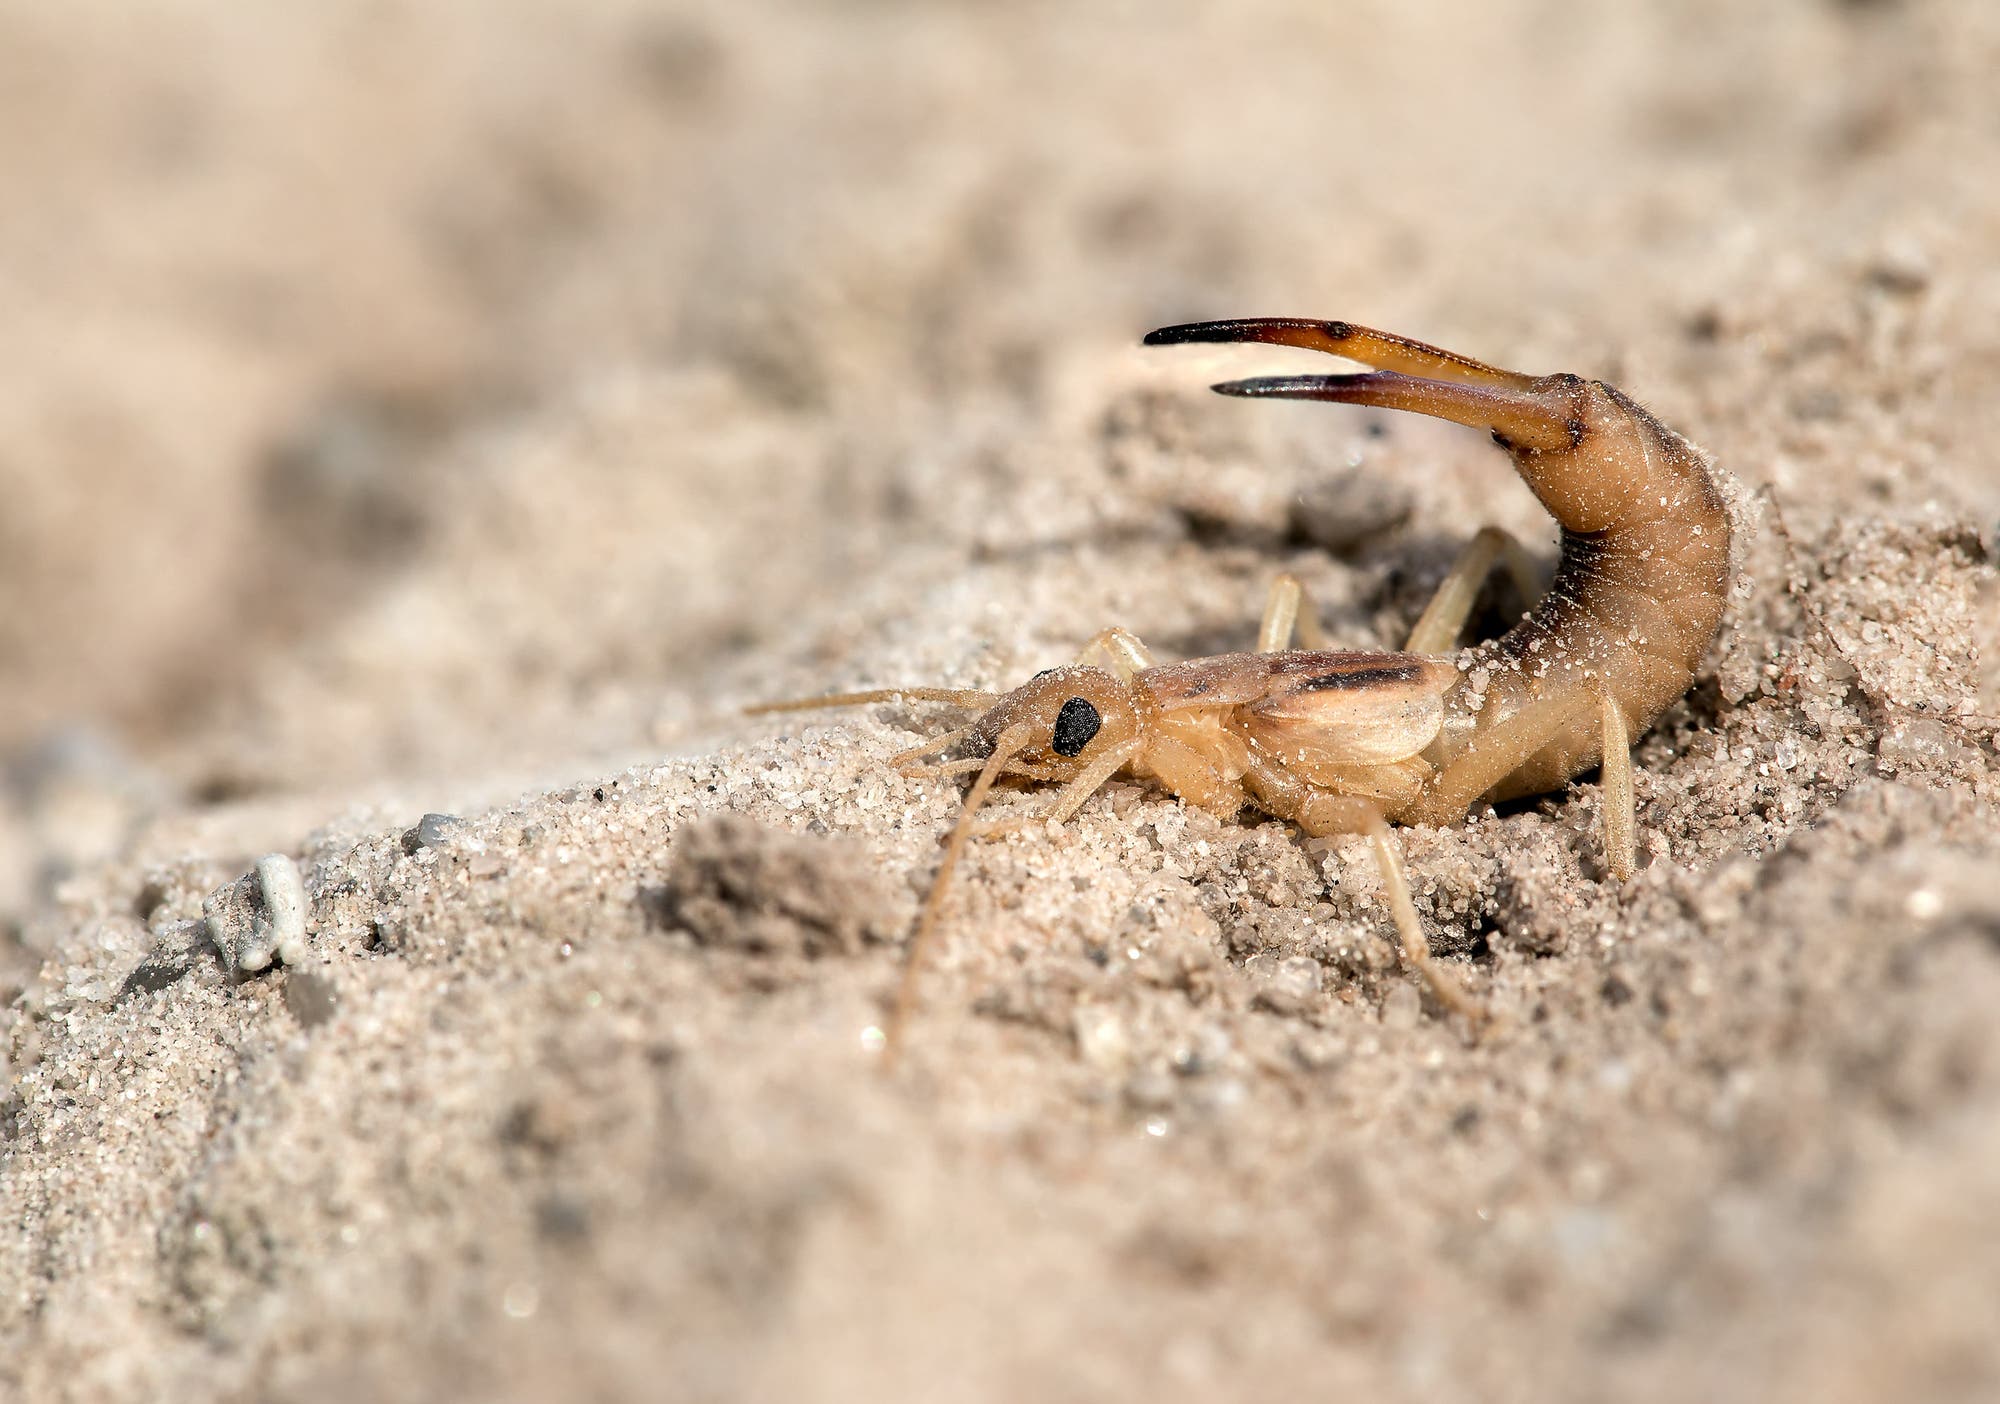 Der Sandohrwurm ist ein typischer Bewohner offener, vegetationsfreier Sandflächen